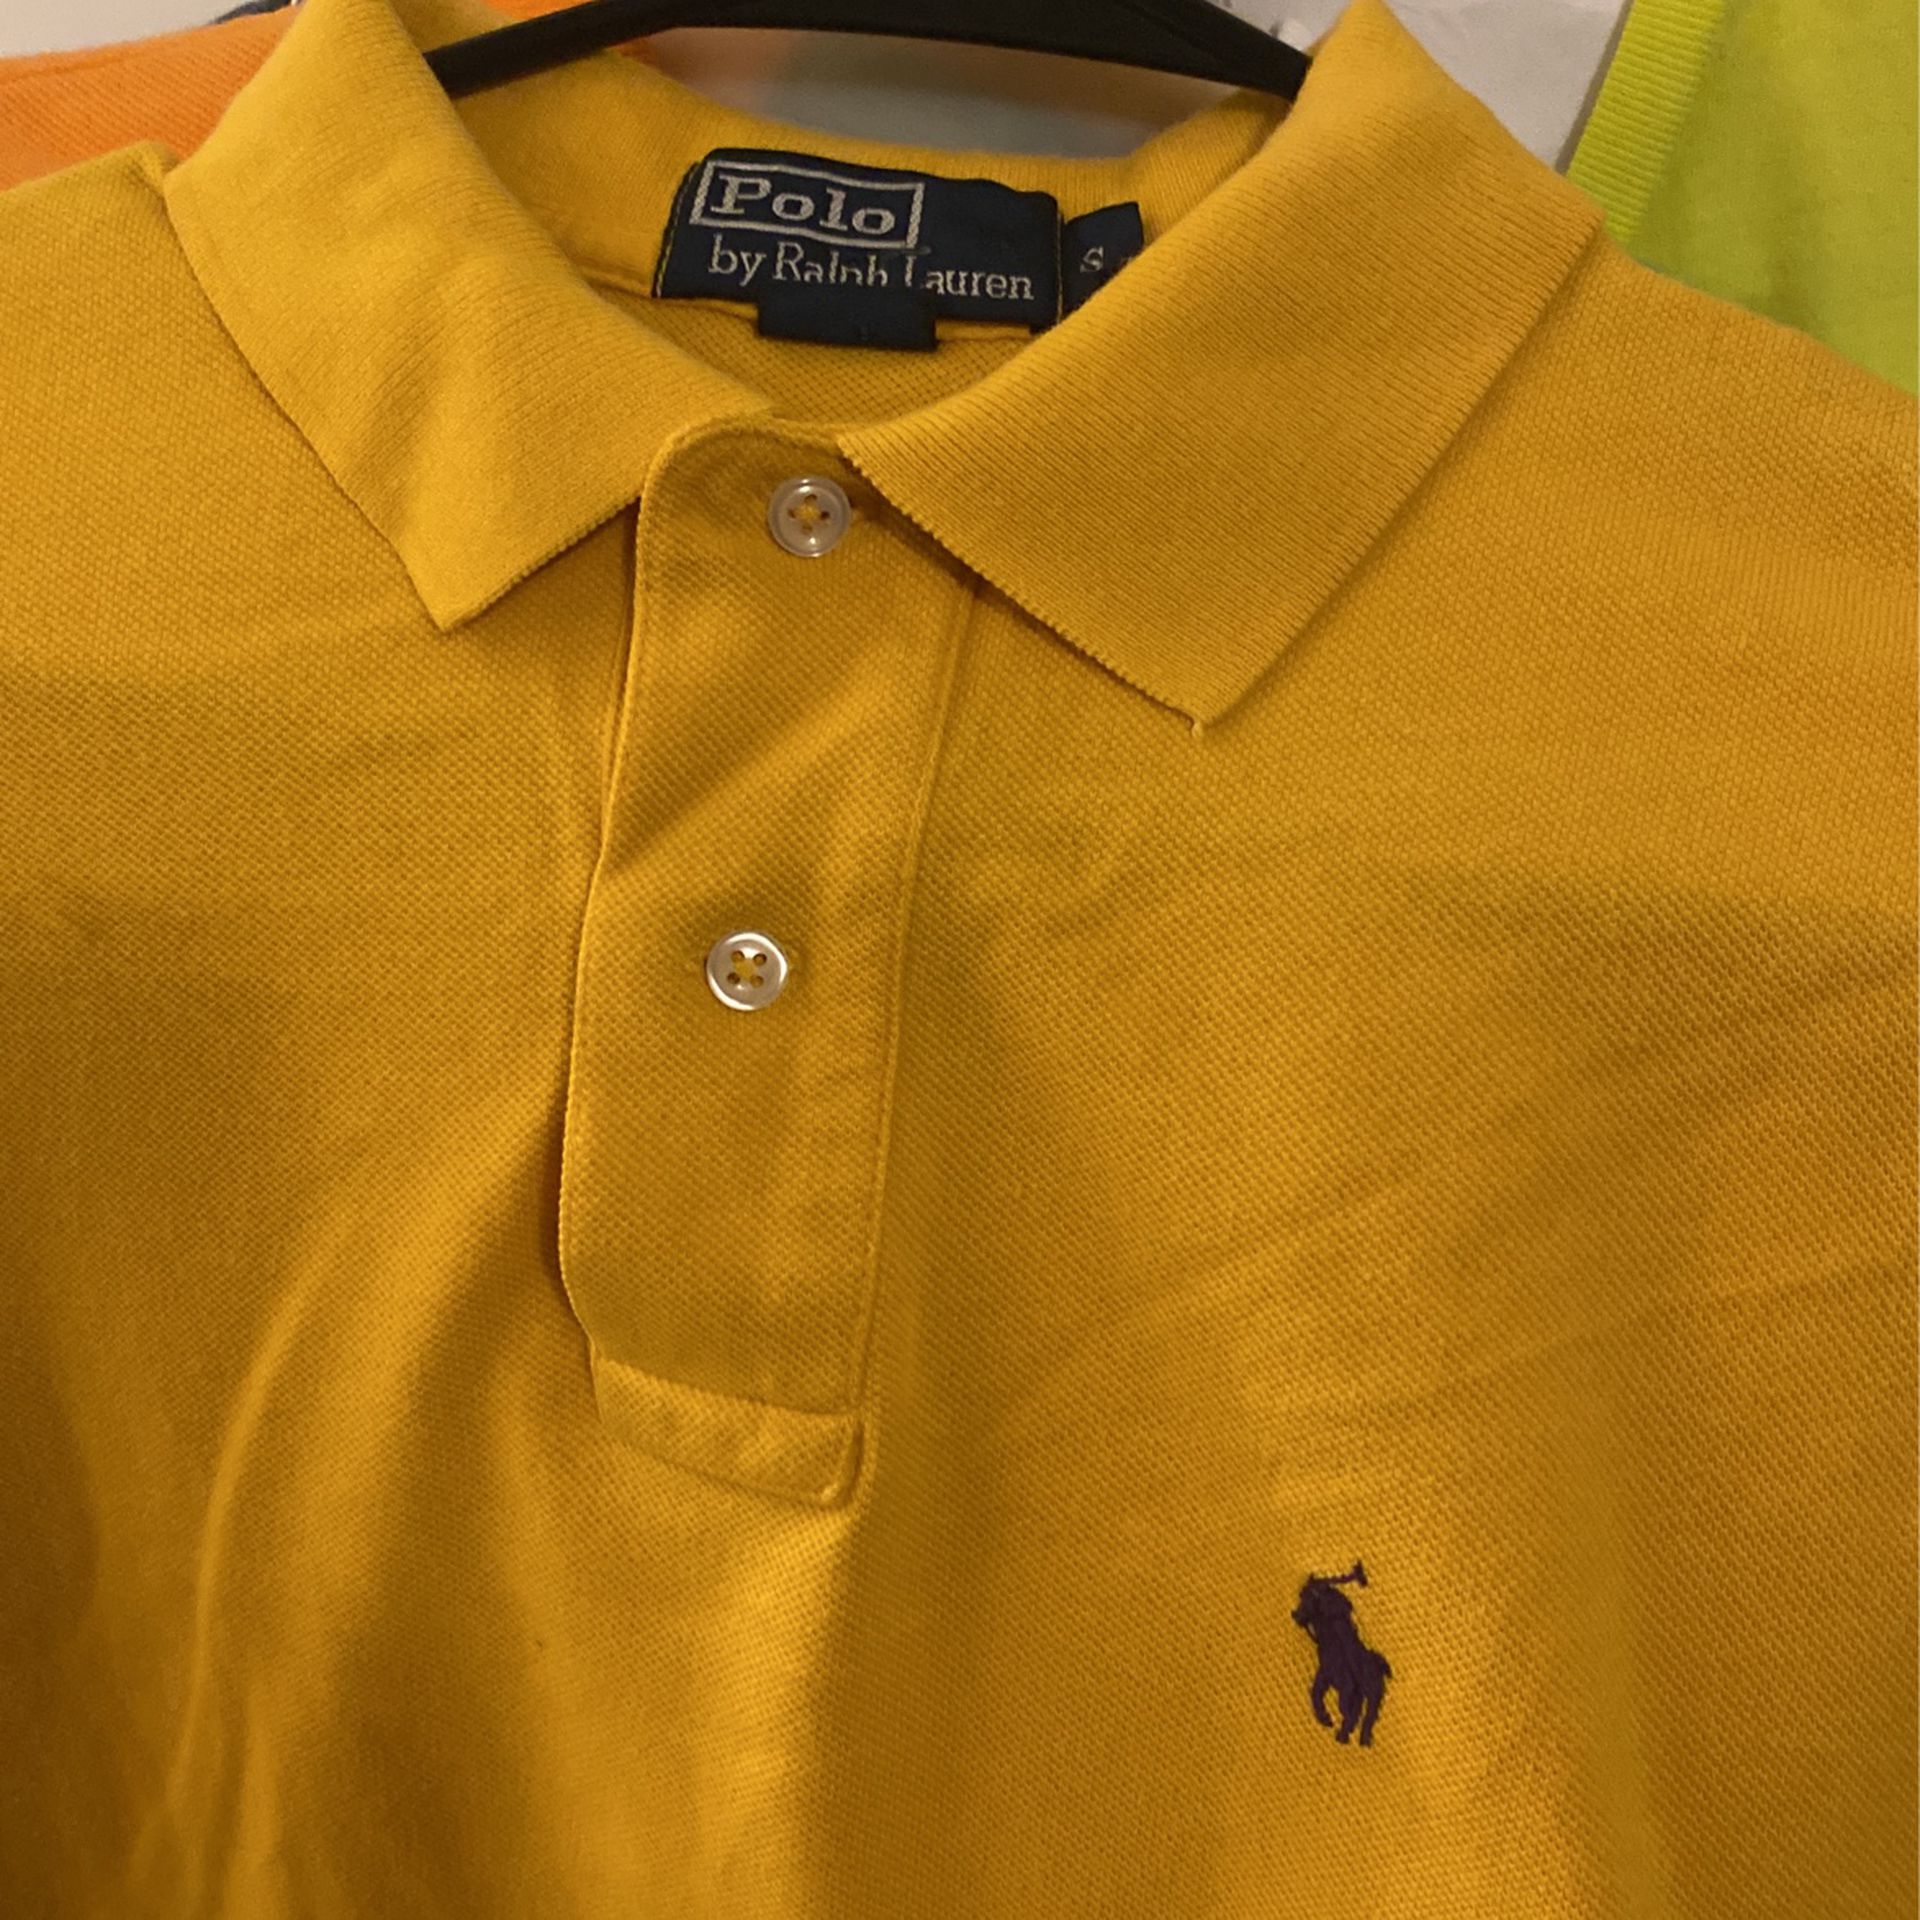 Ralph Lauren Polo Size Small Men’s Polo Shirt